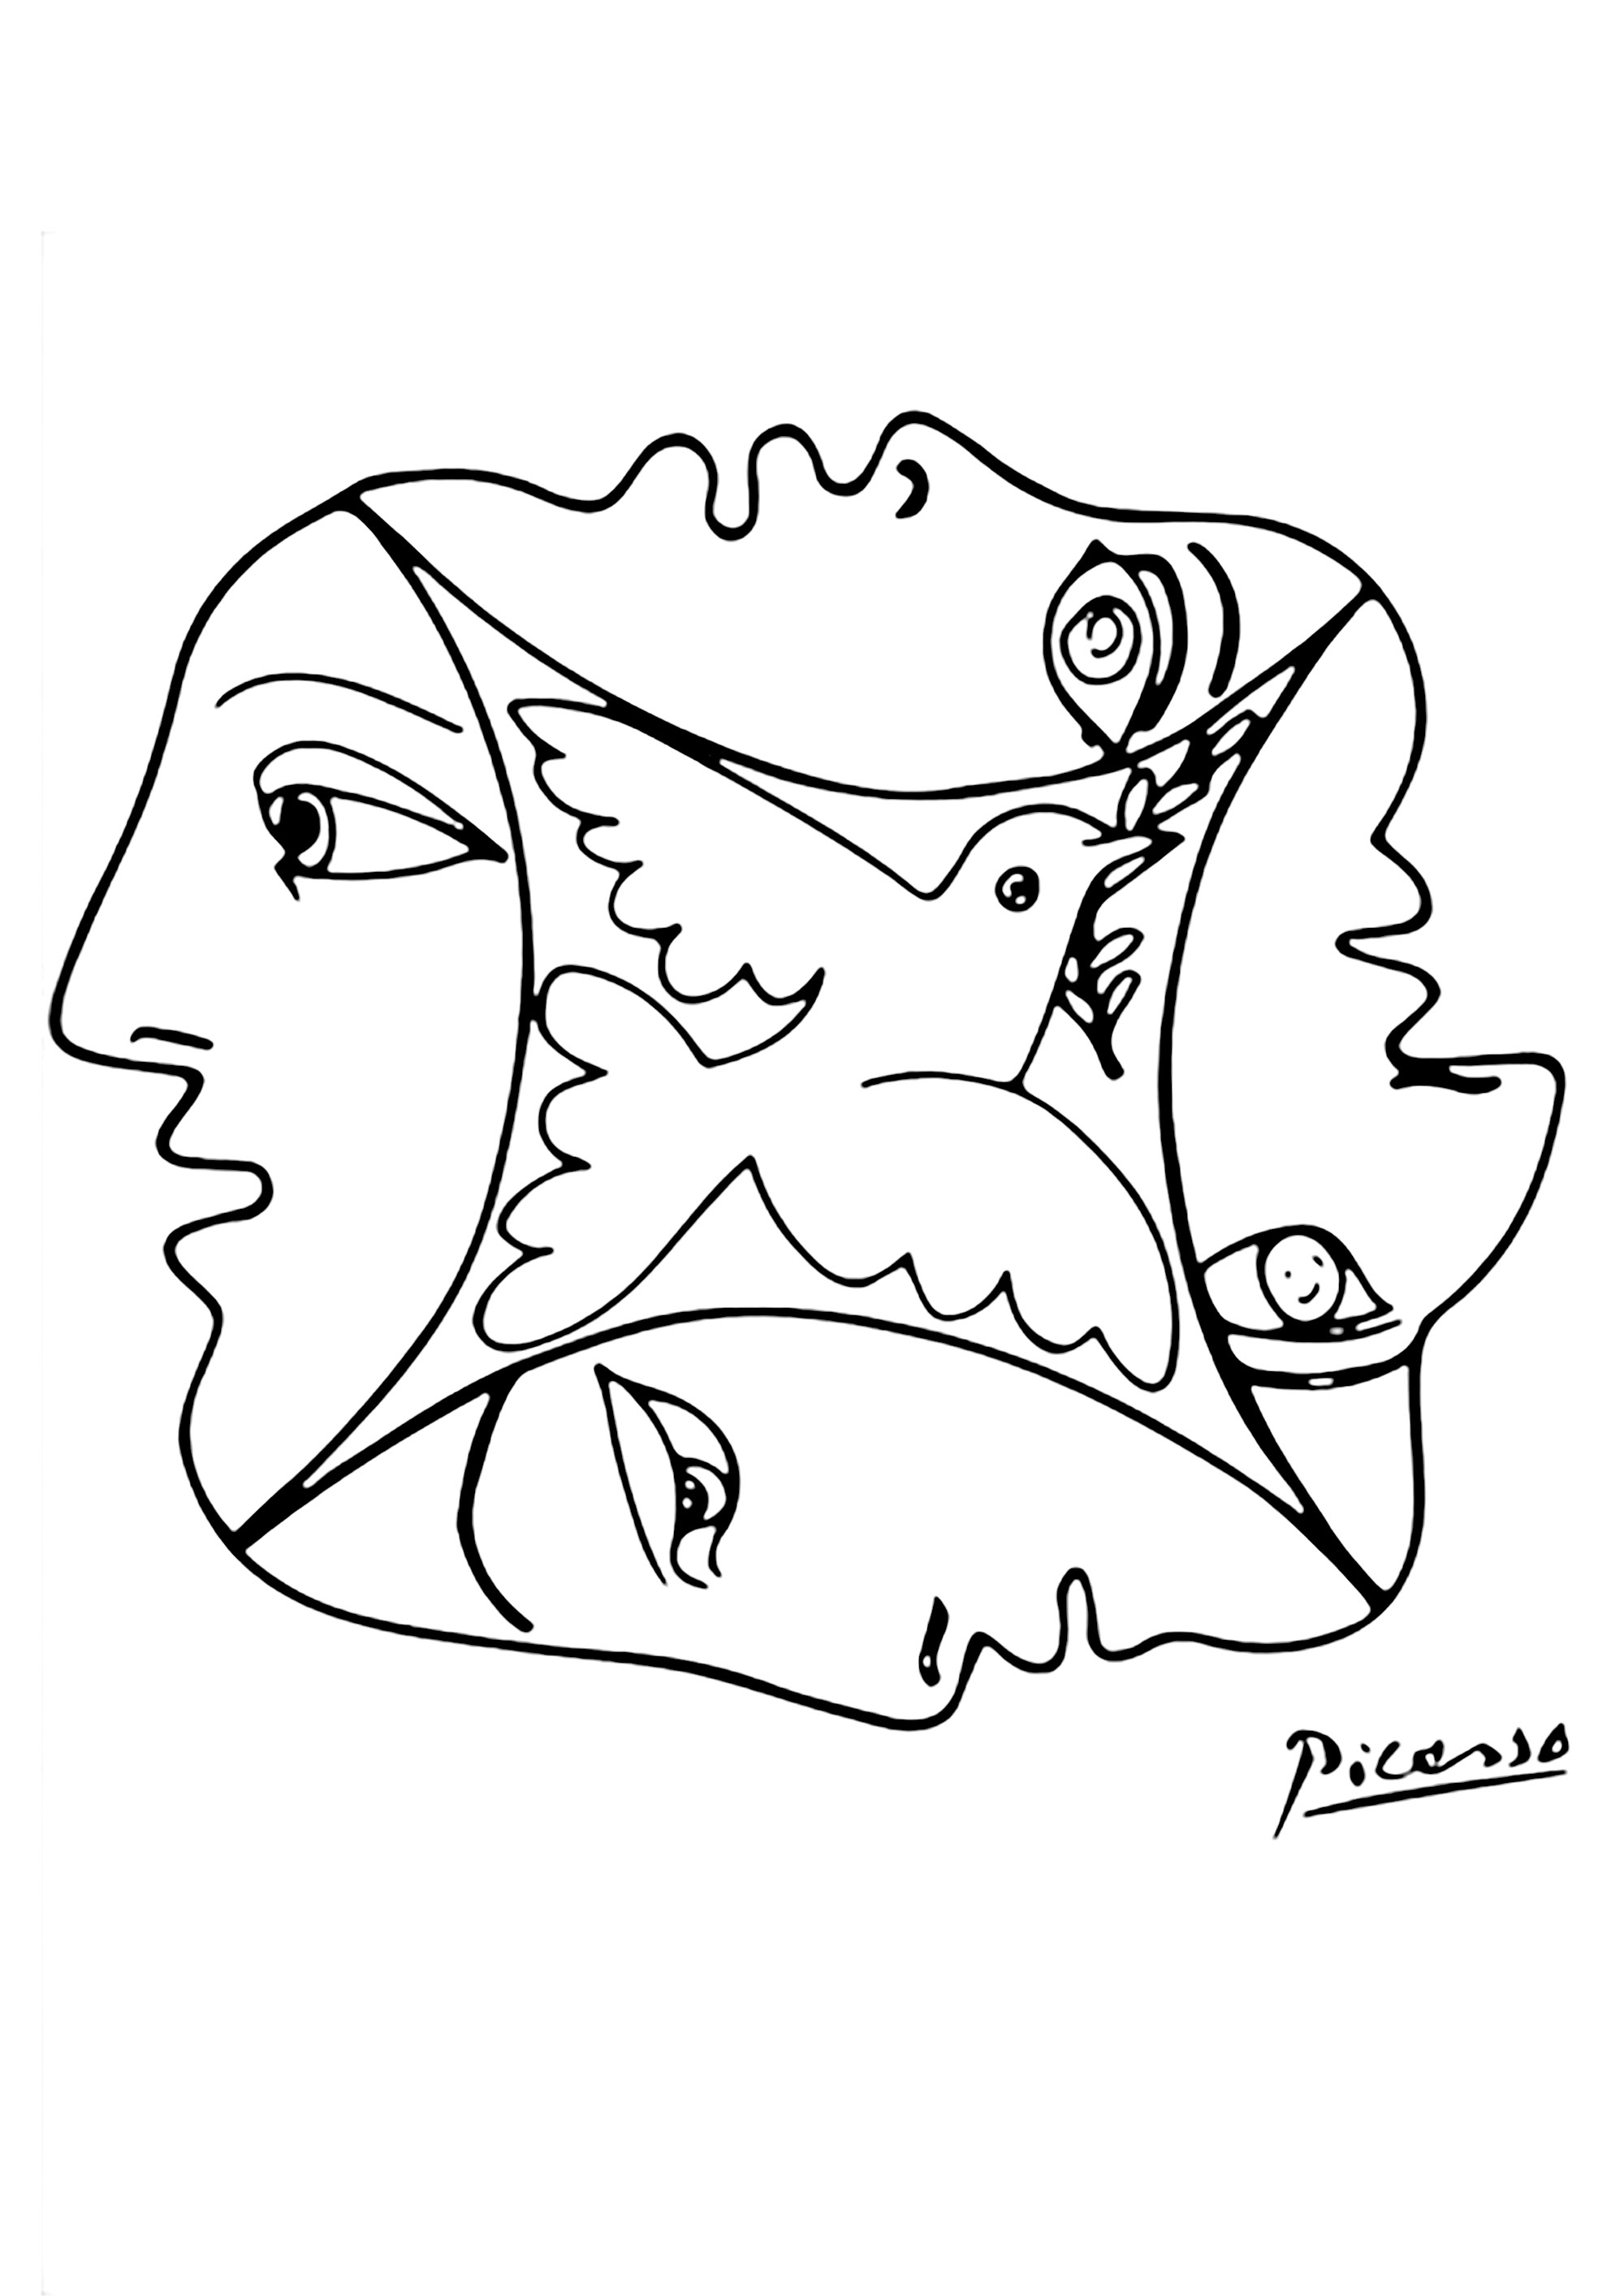 Dibujo de Pablo Pablo Picasso con una paloma y caras. Un dibujo que representa la paz y la fraternidad